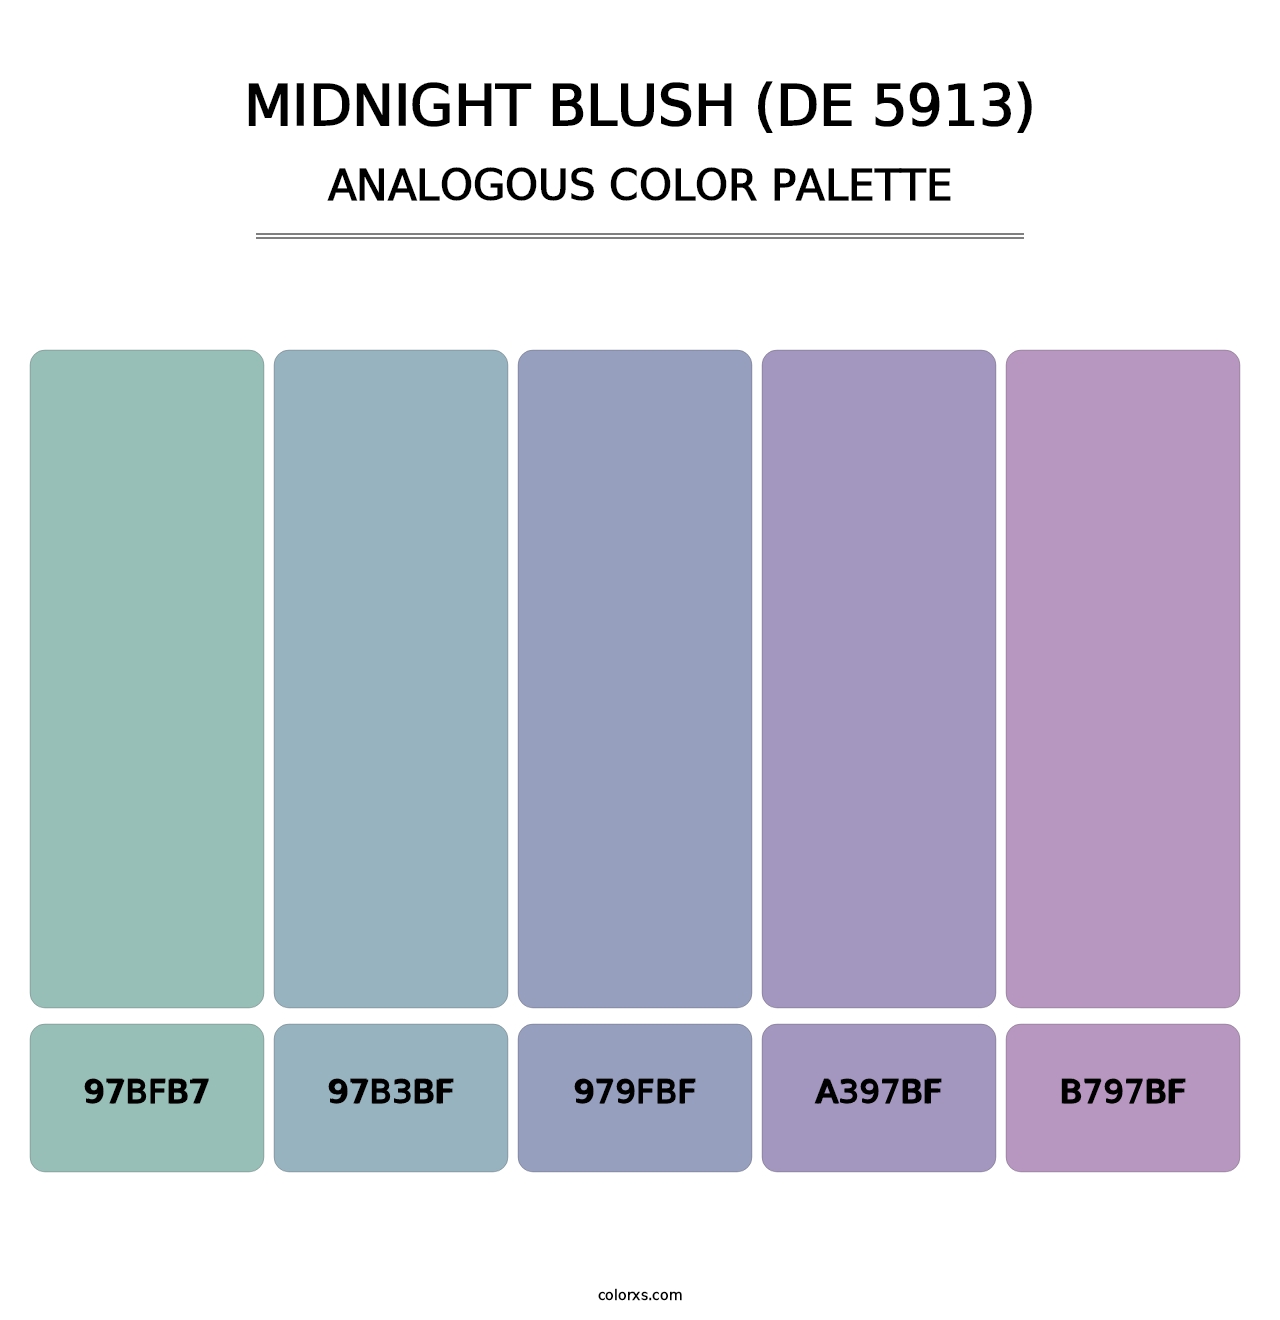 Midnight Blush (DE 5913) - Analogous Color Palette